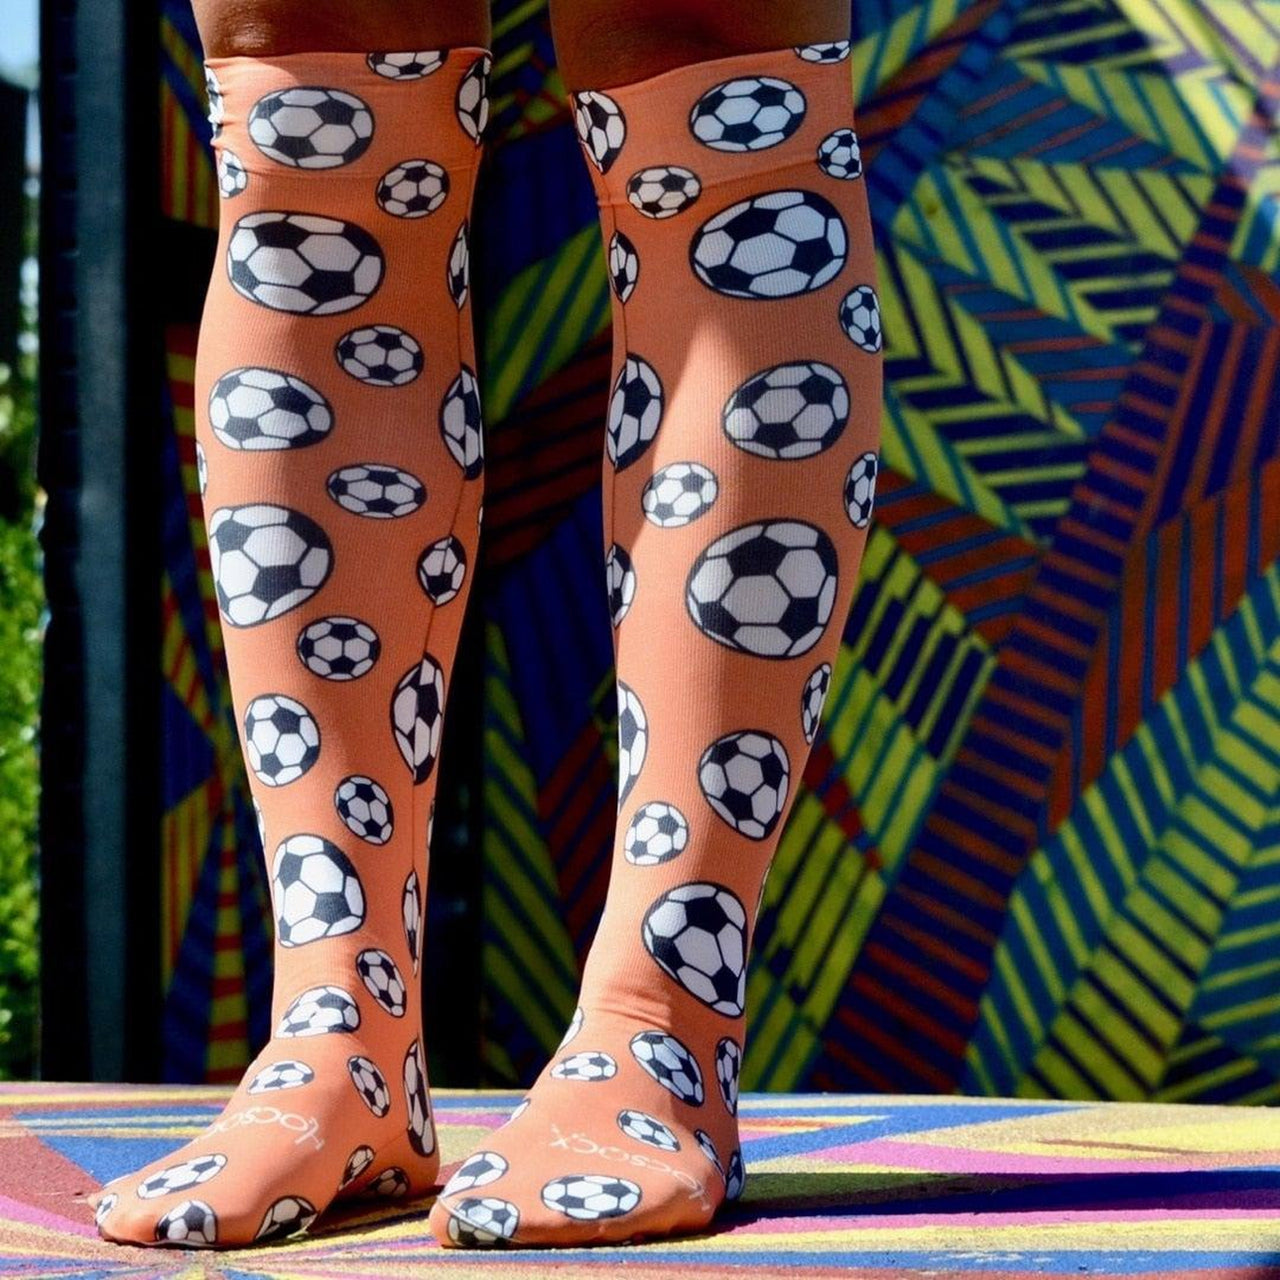 Hocsocx Orange Soccer Balls Shin Guard Rash Liner Sport Socks